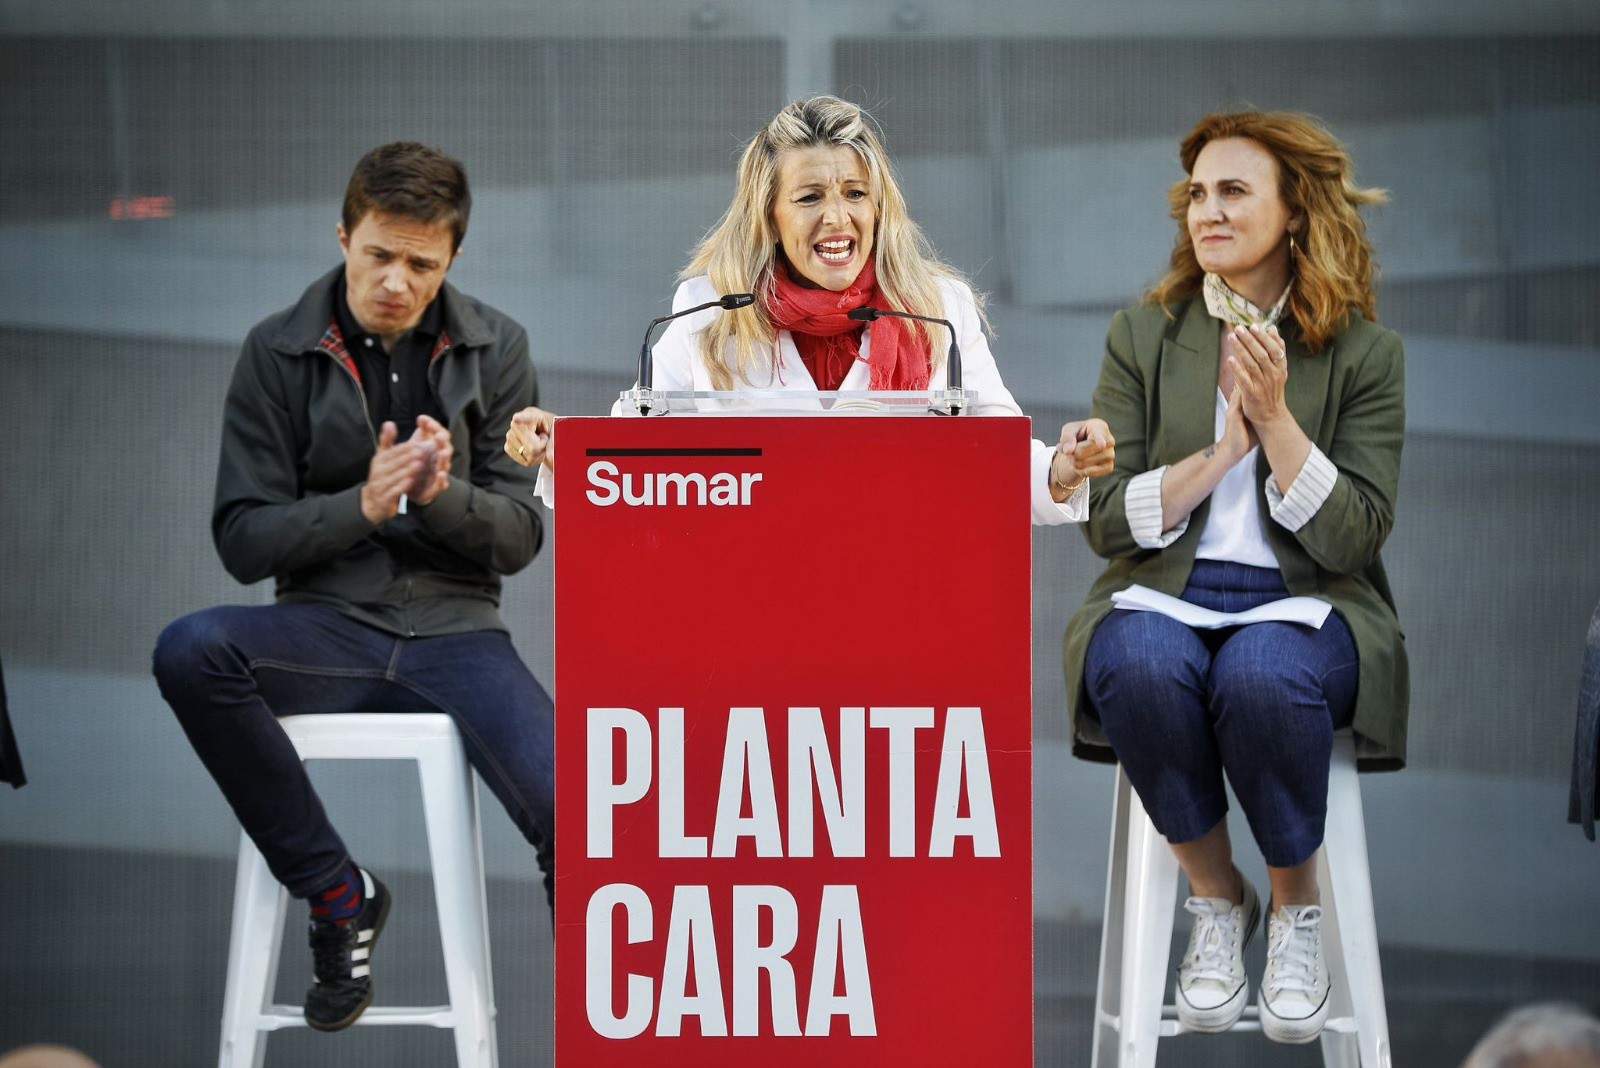 La vicepresidenta segunda del Gobierno y coordinadora general de Sumar, Yolanda Díaz, en un acto público por las elecciones europeas en Jerez de la Frontera (Cádiz), junto a la cabeza de lista, Estrella Galán, y el portavoz de Sumar, Íñigo Errejón.